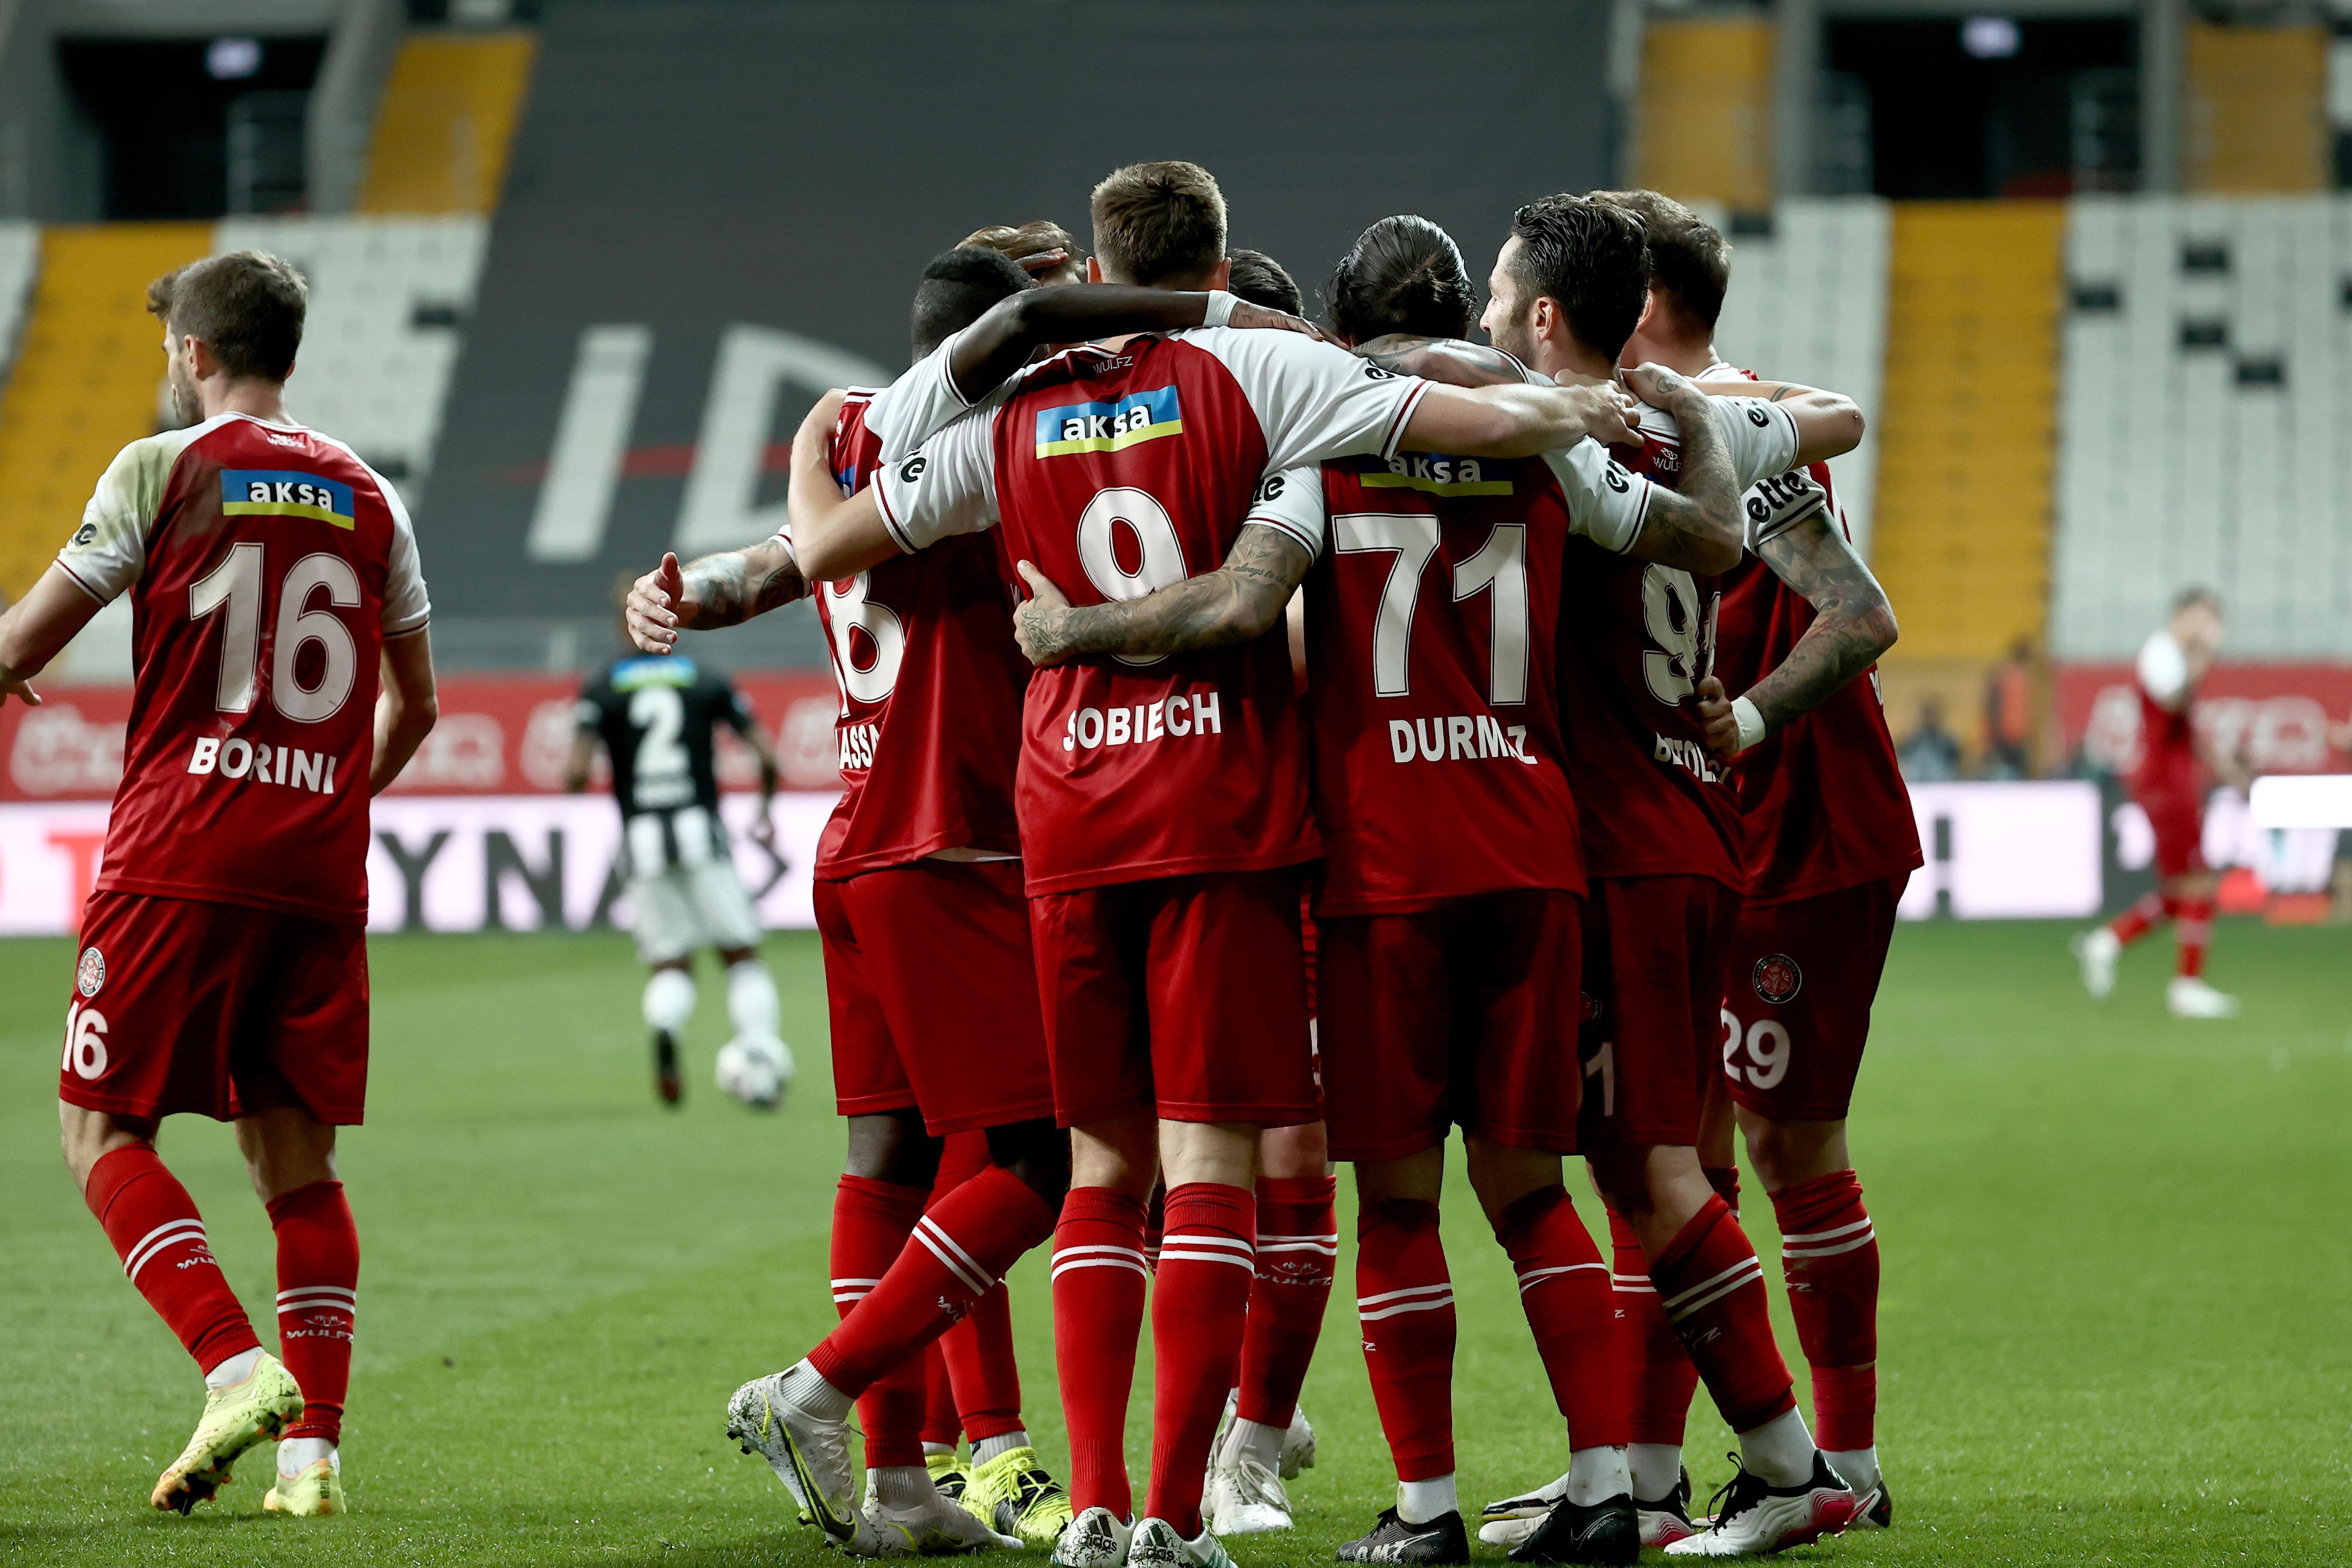 (ÖZET) Beşiktaş - Fatih Karagümrük maç sonucu: 1-2